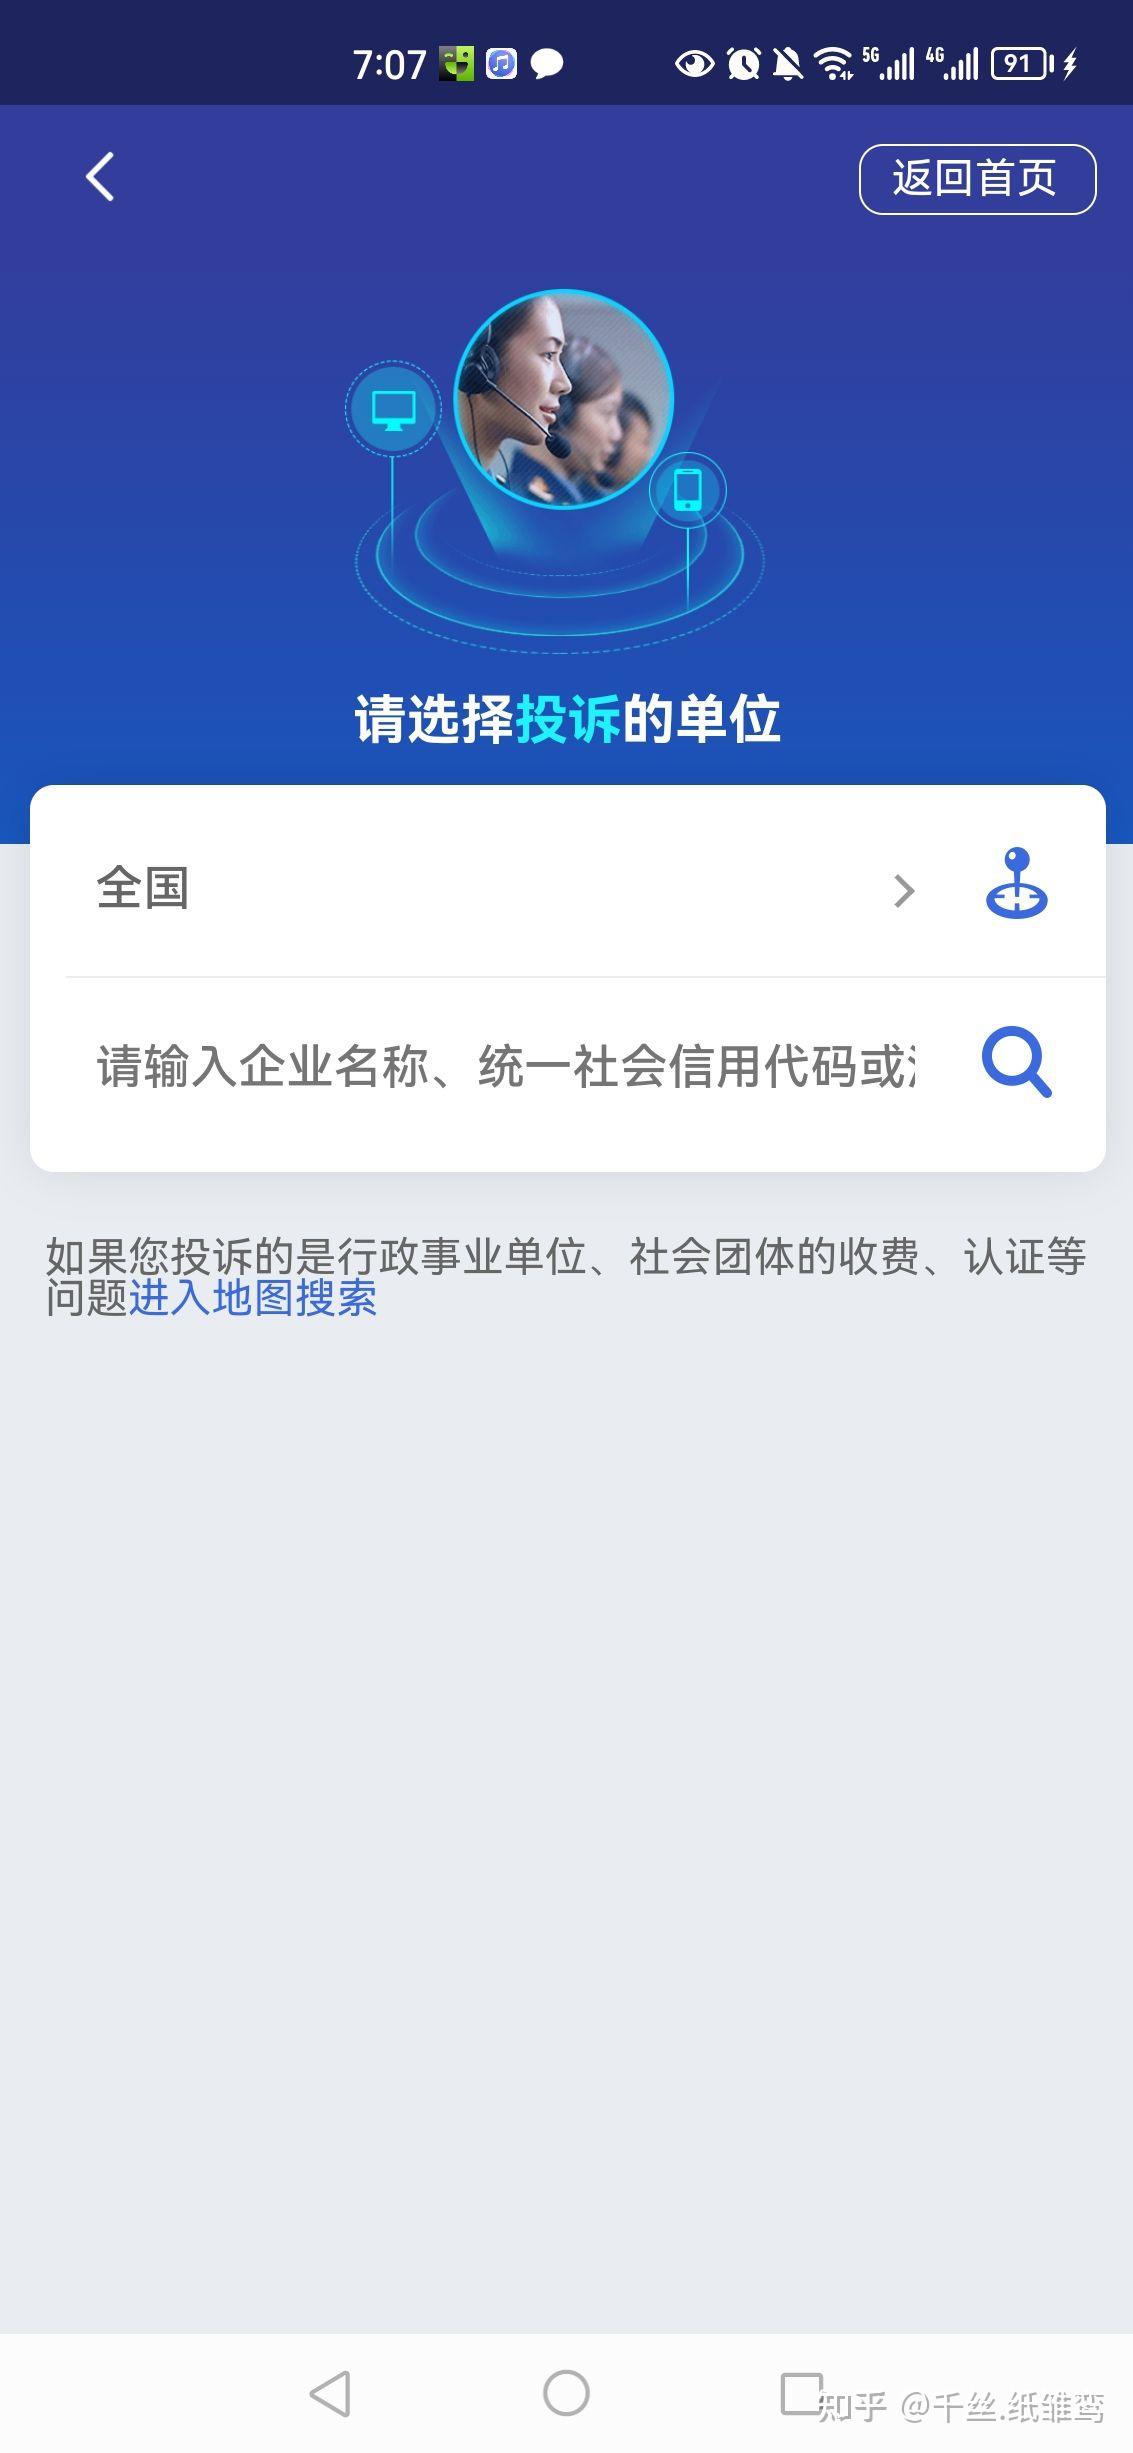 12301全国旅游投诉举报平台正式上线--启东日报